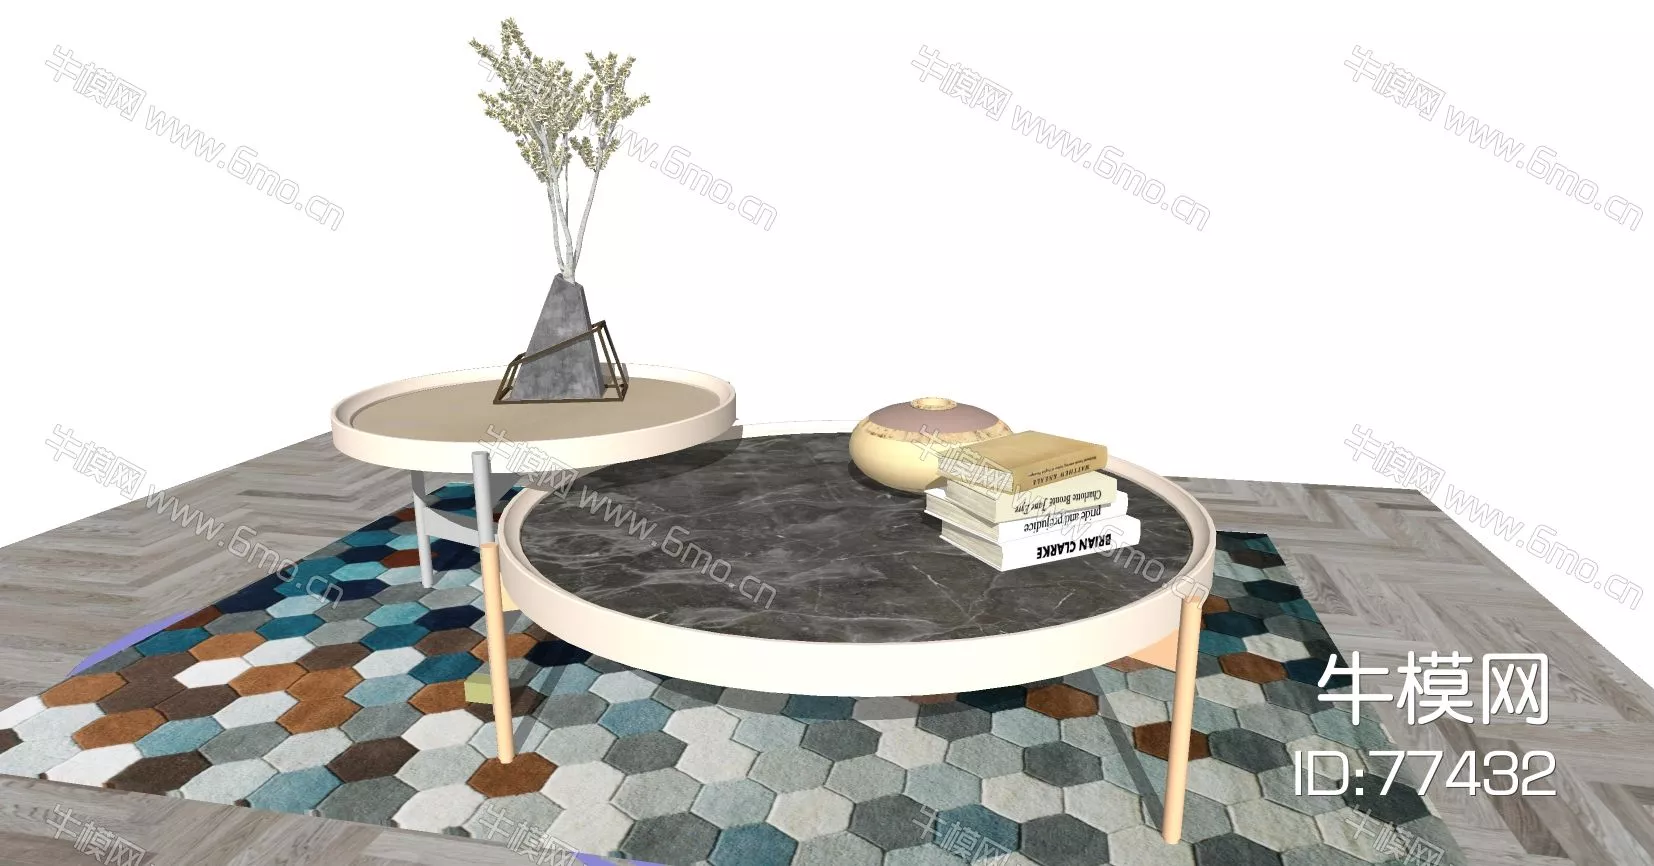 MODERN SIDE TABLE - SKETCHUP 3D MODEL - ENSCAPE - 77432